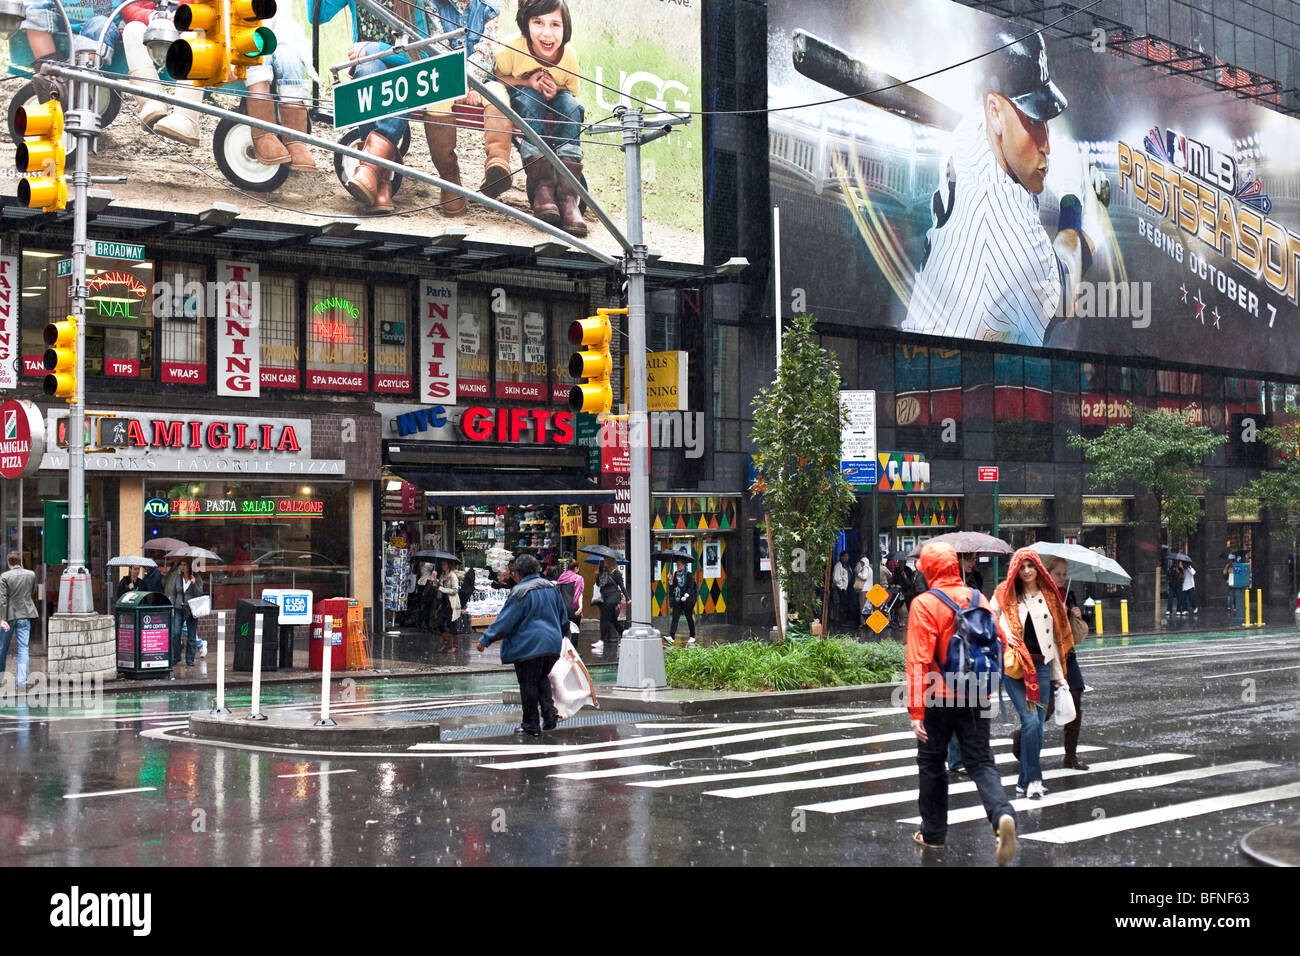 Peu de piétons dans des vêtements de pluie traversant Broadway à la 50e Rue Ouest un dimanche de fortes pluies diluviennes dans la région de New York City Banque D'Images